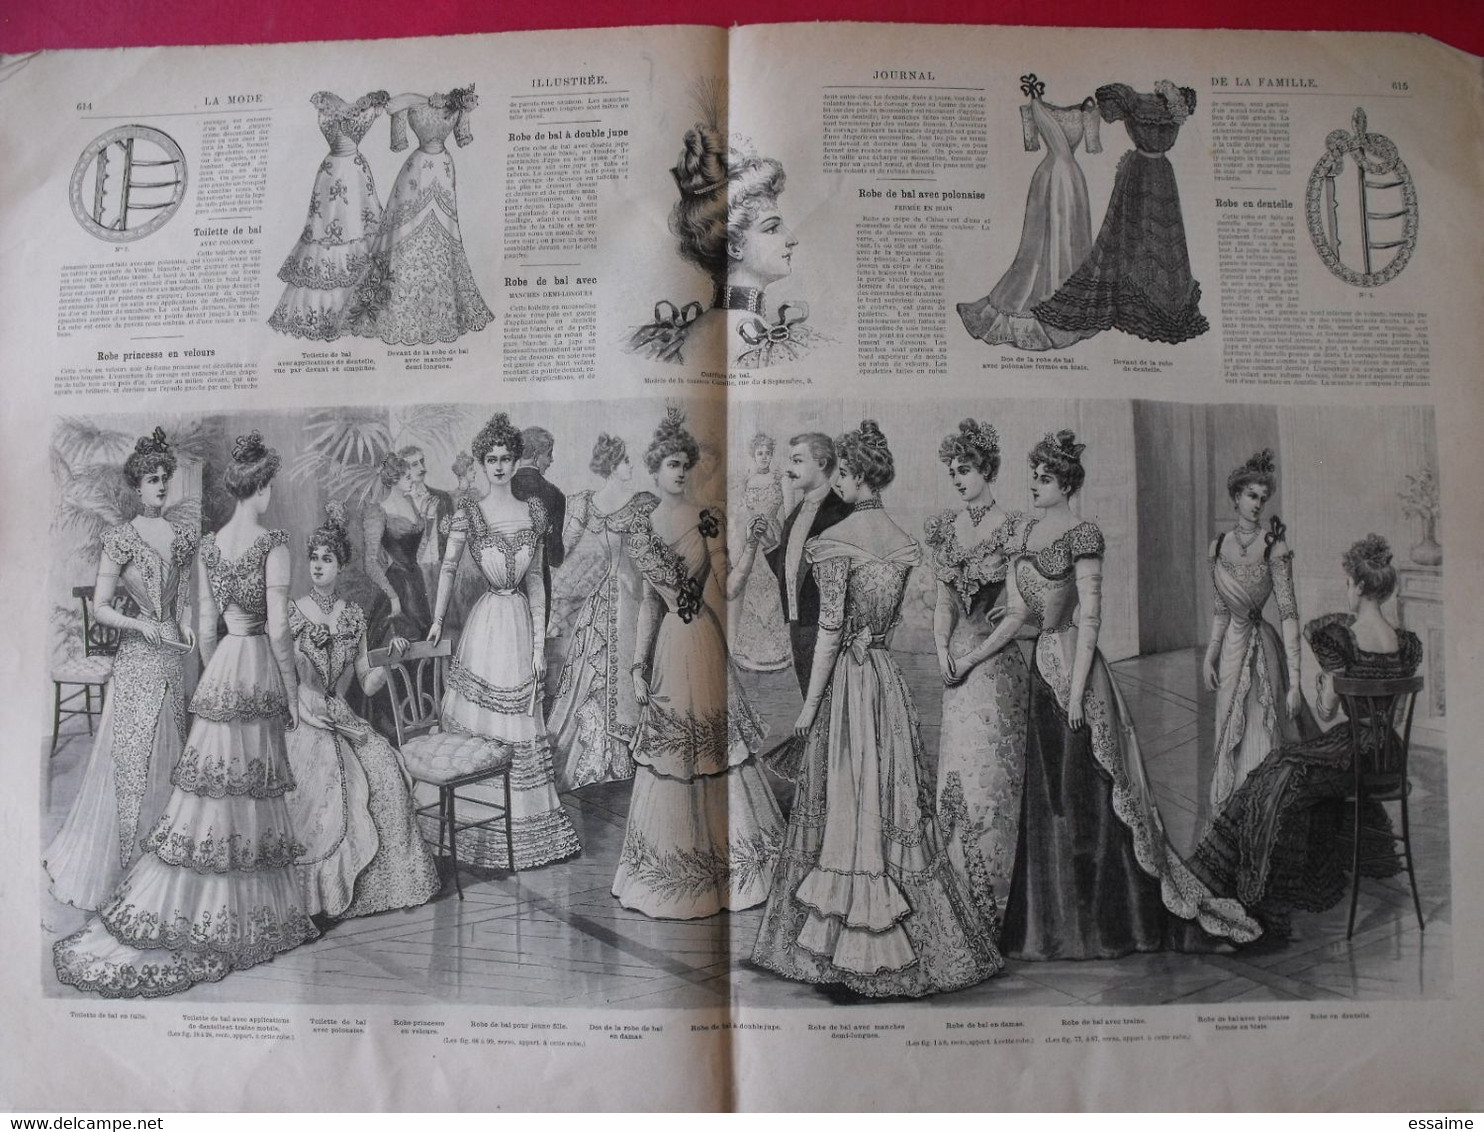 3 revues la mode illustrée, journal de la famille.  n° 50,51,52 de 1898. couverture en couleur. jolies gravures de mode